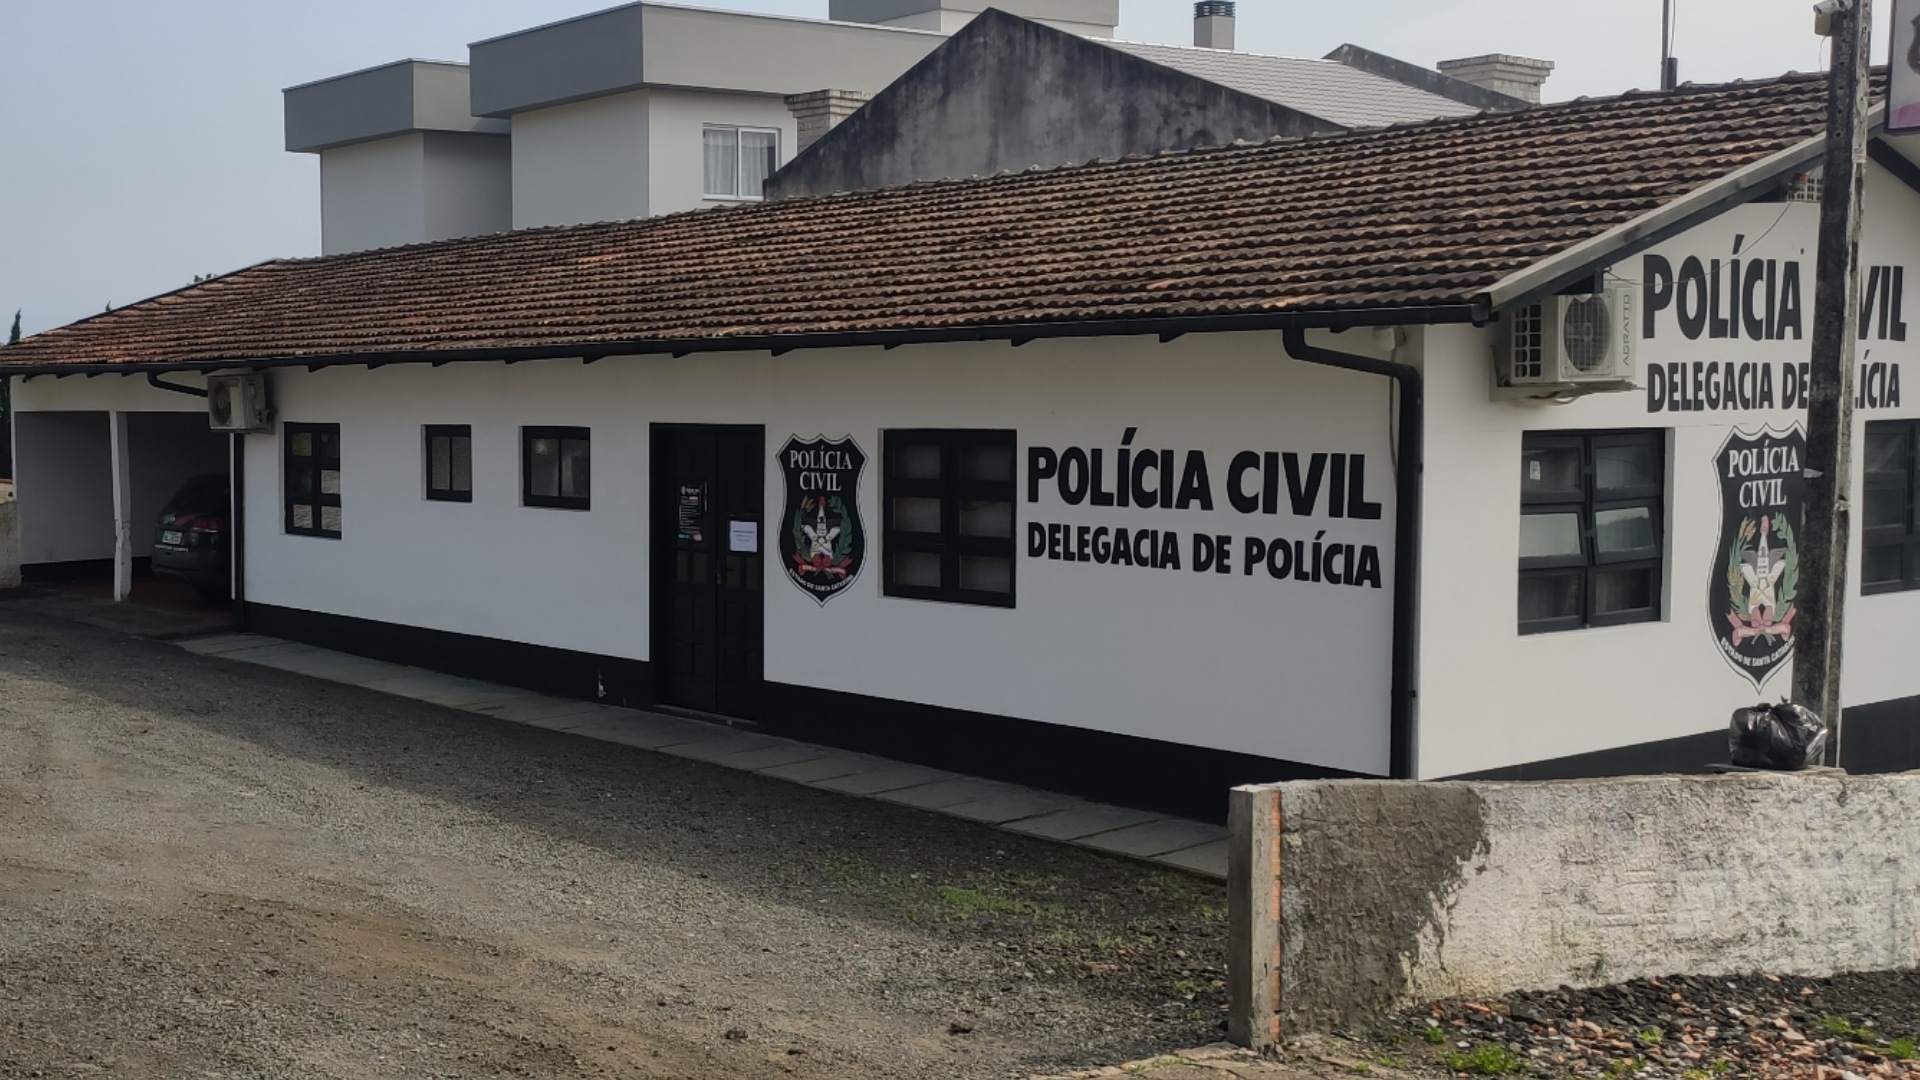 Avô é preso pelo crime de Importunação Sexual contra sua neta em Pouso Redondo